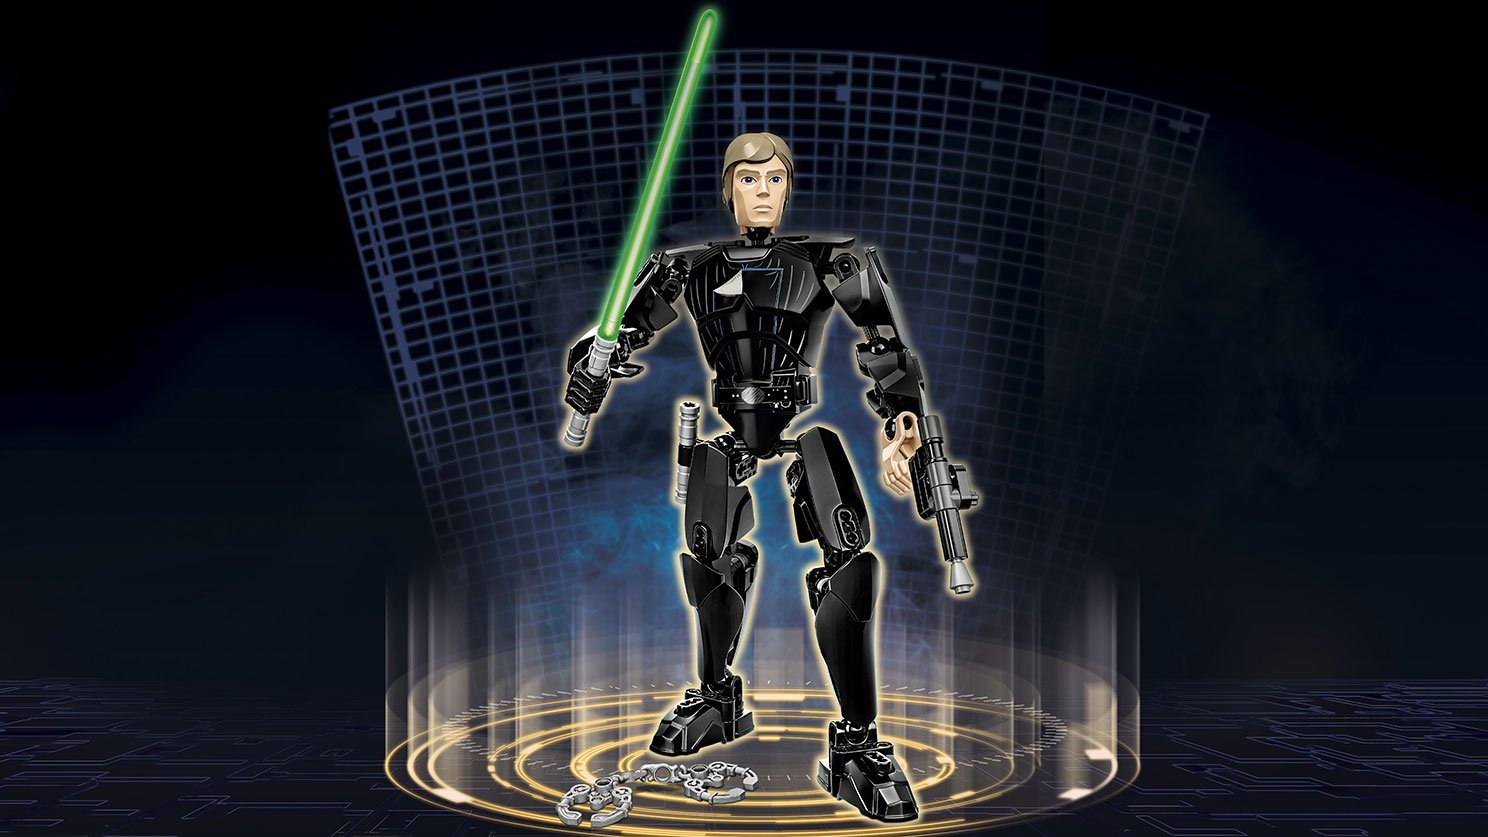 LEGO Star Wars Luke Skywalker™ 75110